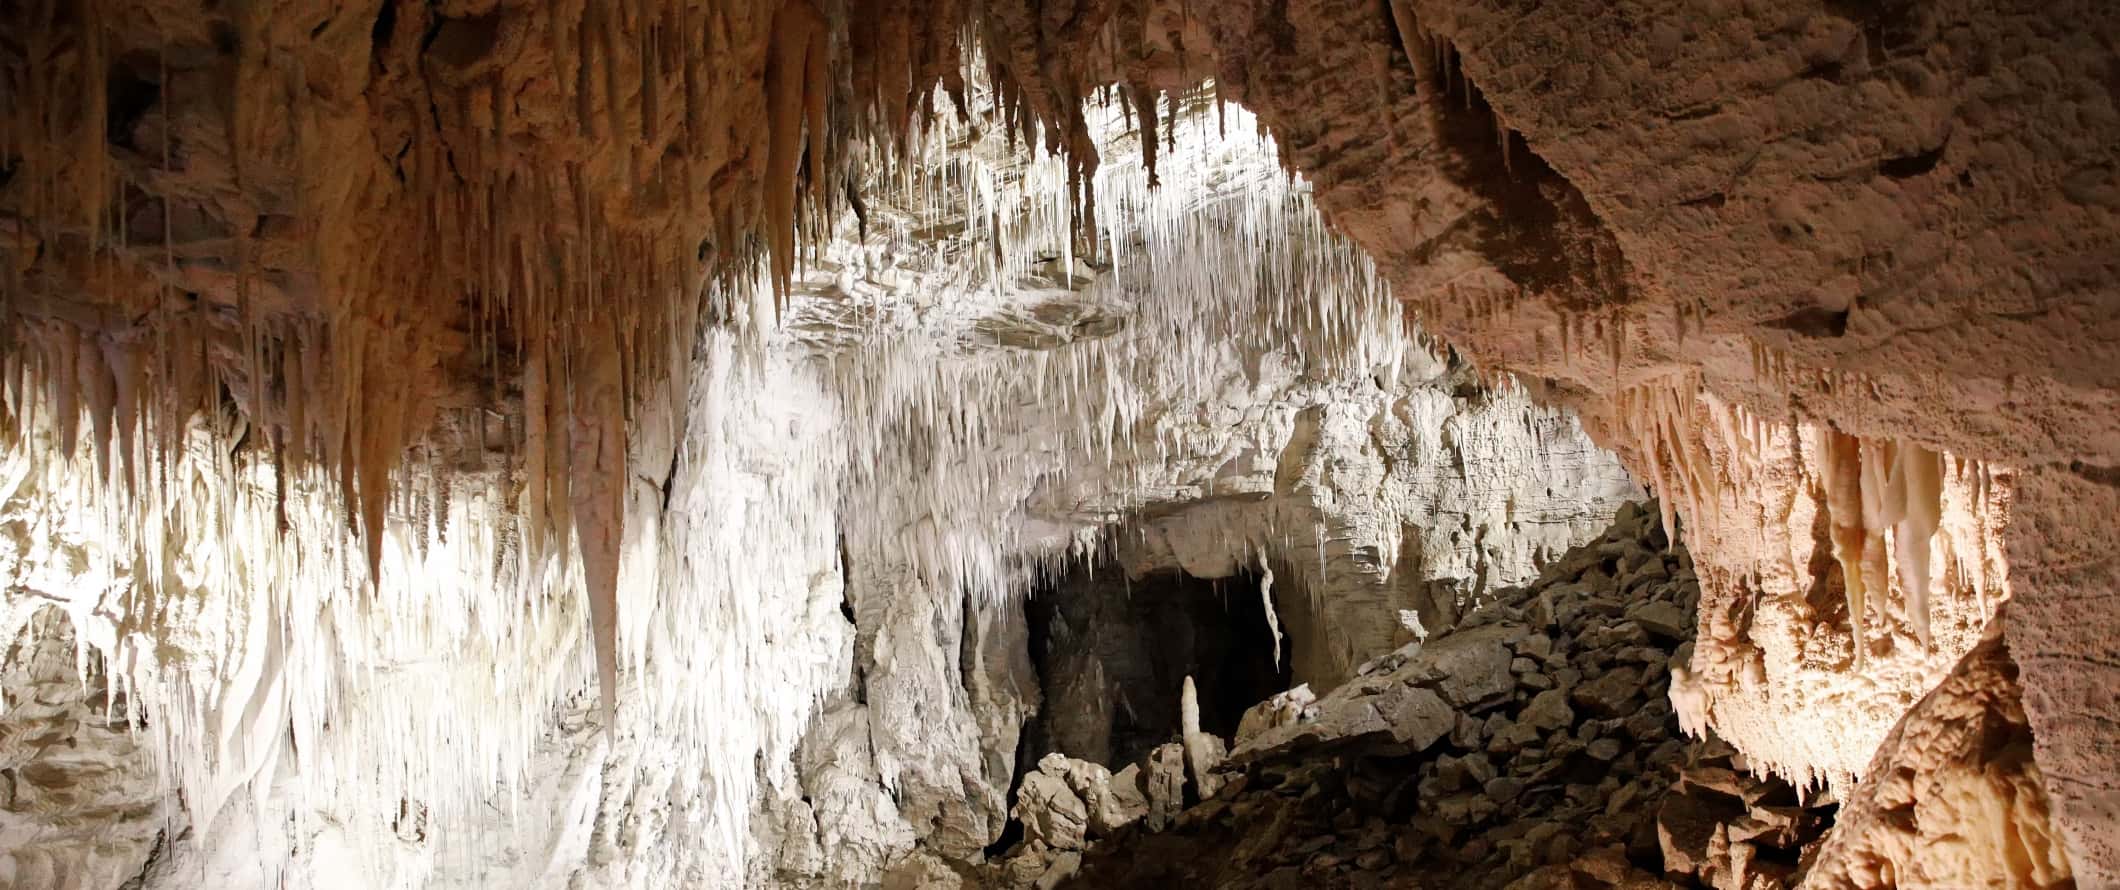 O fechamento de estelaglatitos e estalagmites em cavernas rochosas em Whitomo, Nova Zelândia.